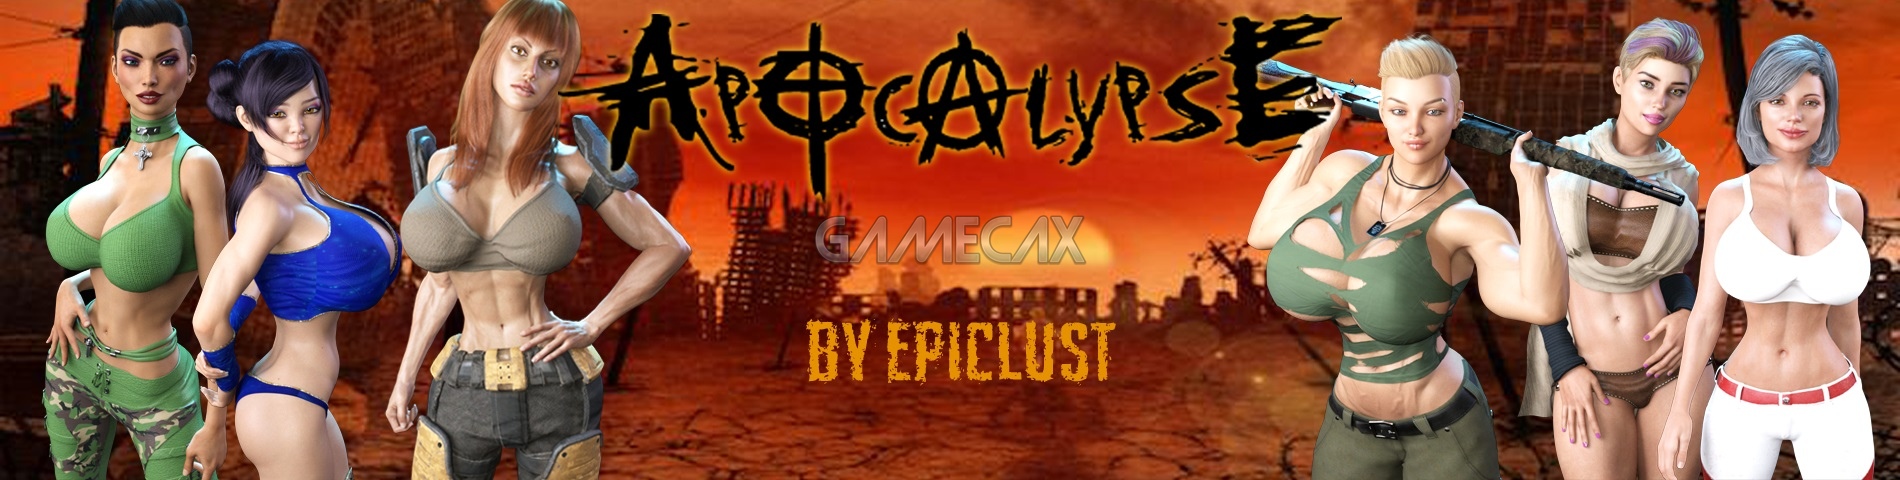 Apocalypse adult game